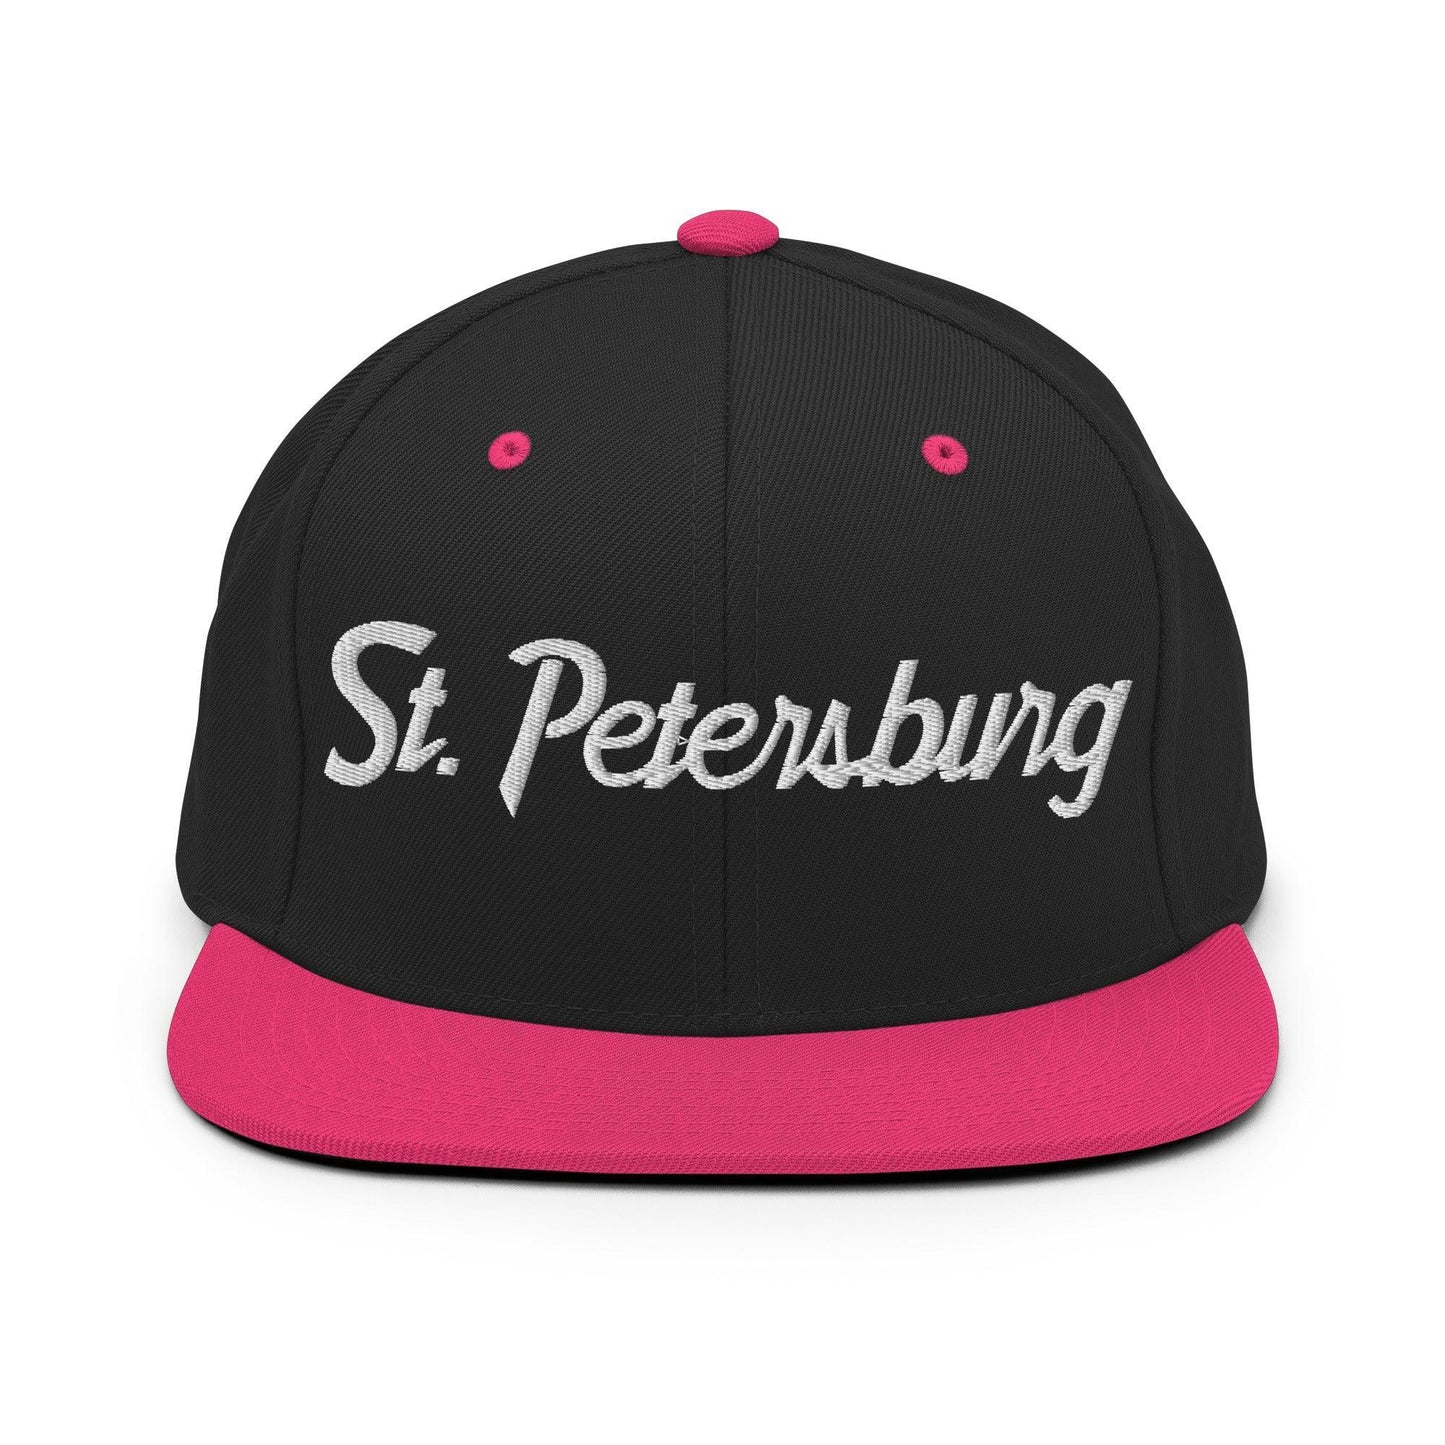 St. Petersburg Script Snapback Hat Black/ Neon Pink